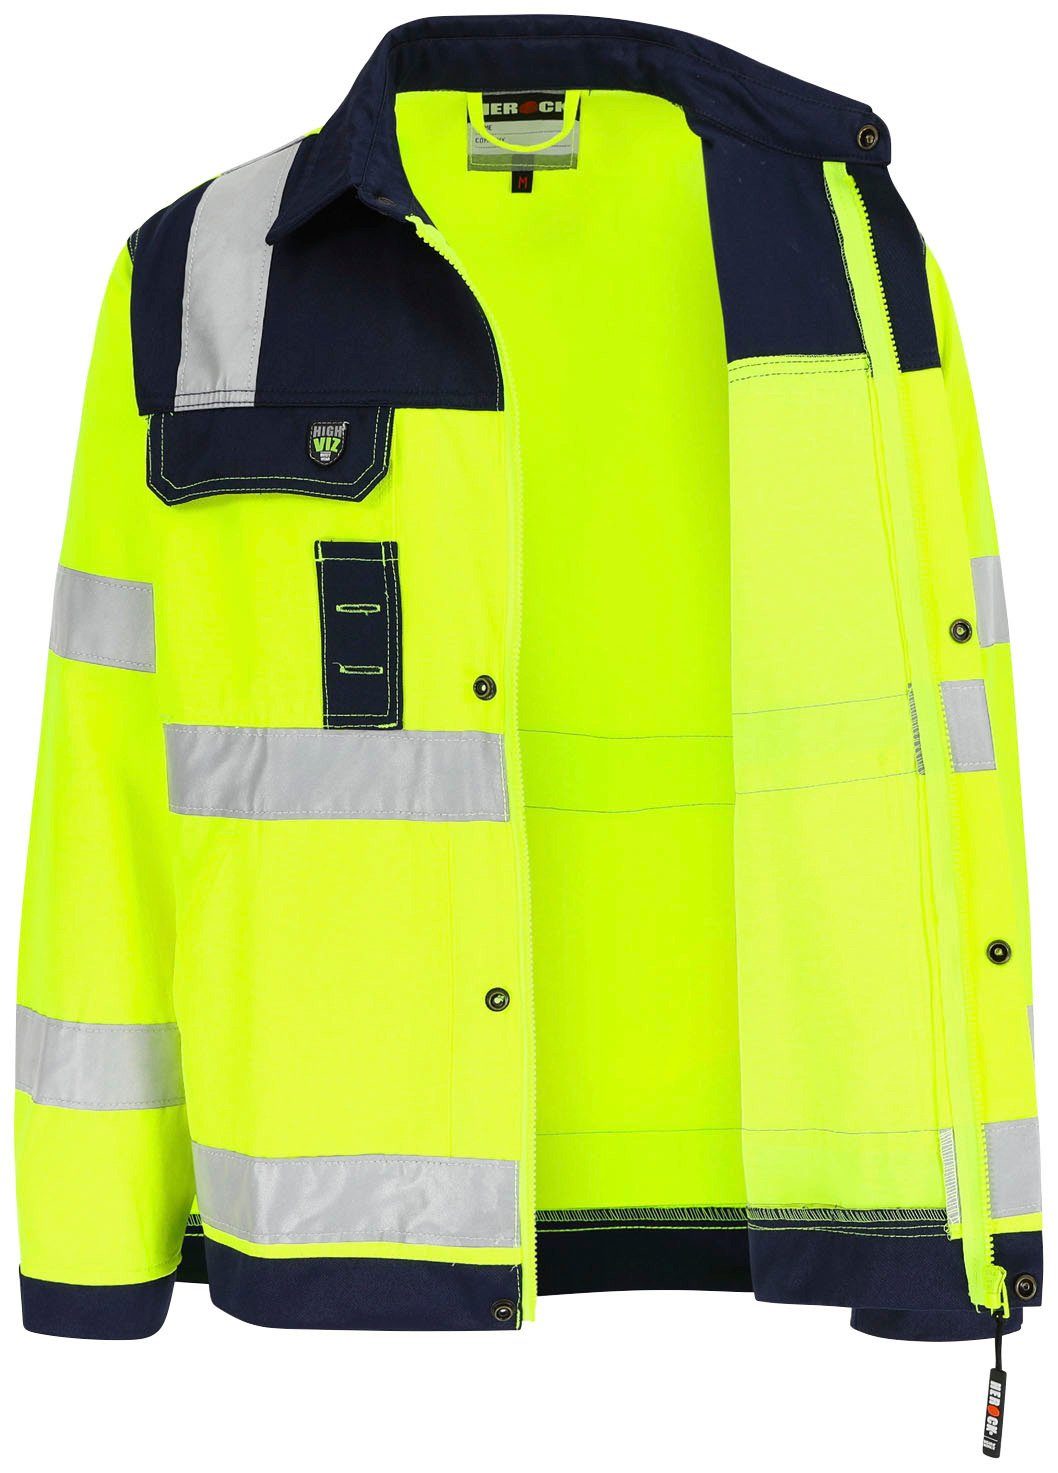 Bündchen, eintellbare Hochsichtbar Jacke 5 reflektierende Herock Taschen, Hochwertig, gelb Bänder Arbeitsjacke 5cm Hydros